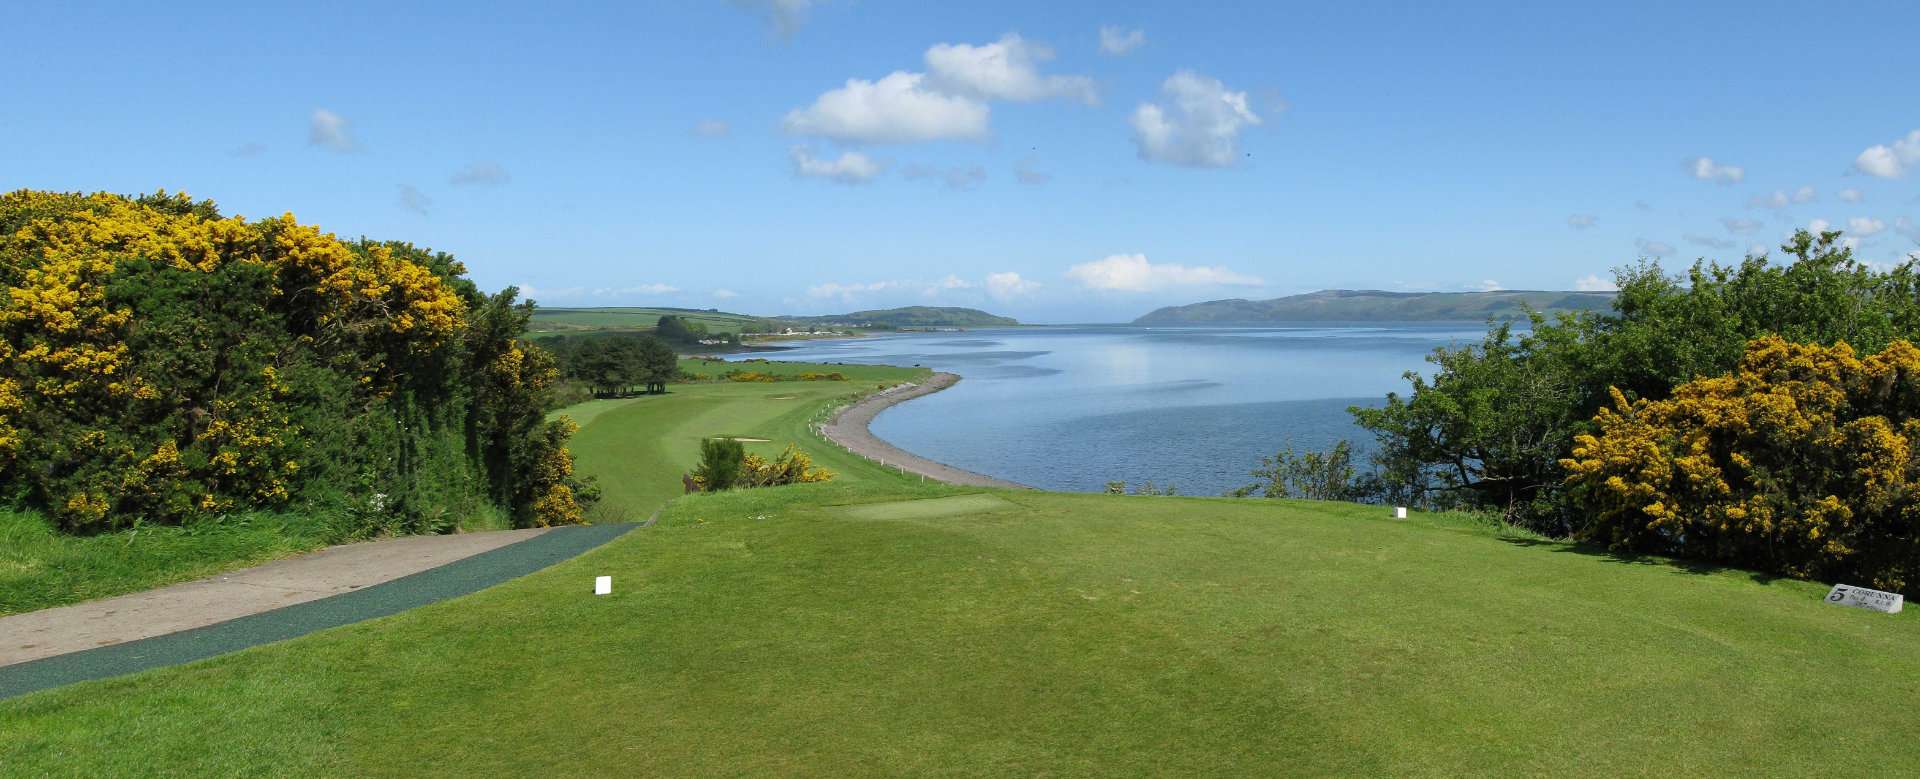 Golf Around Scotland